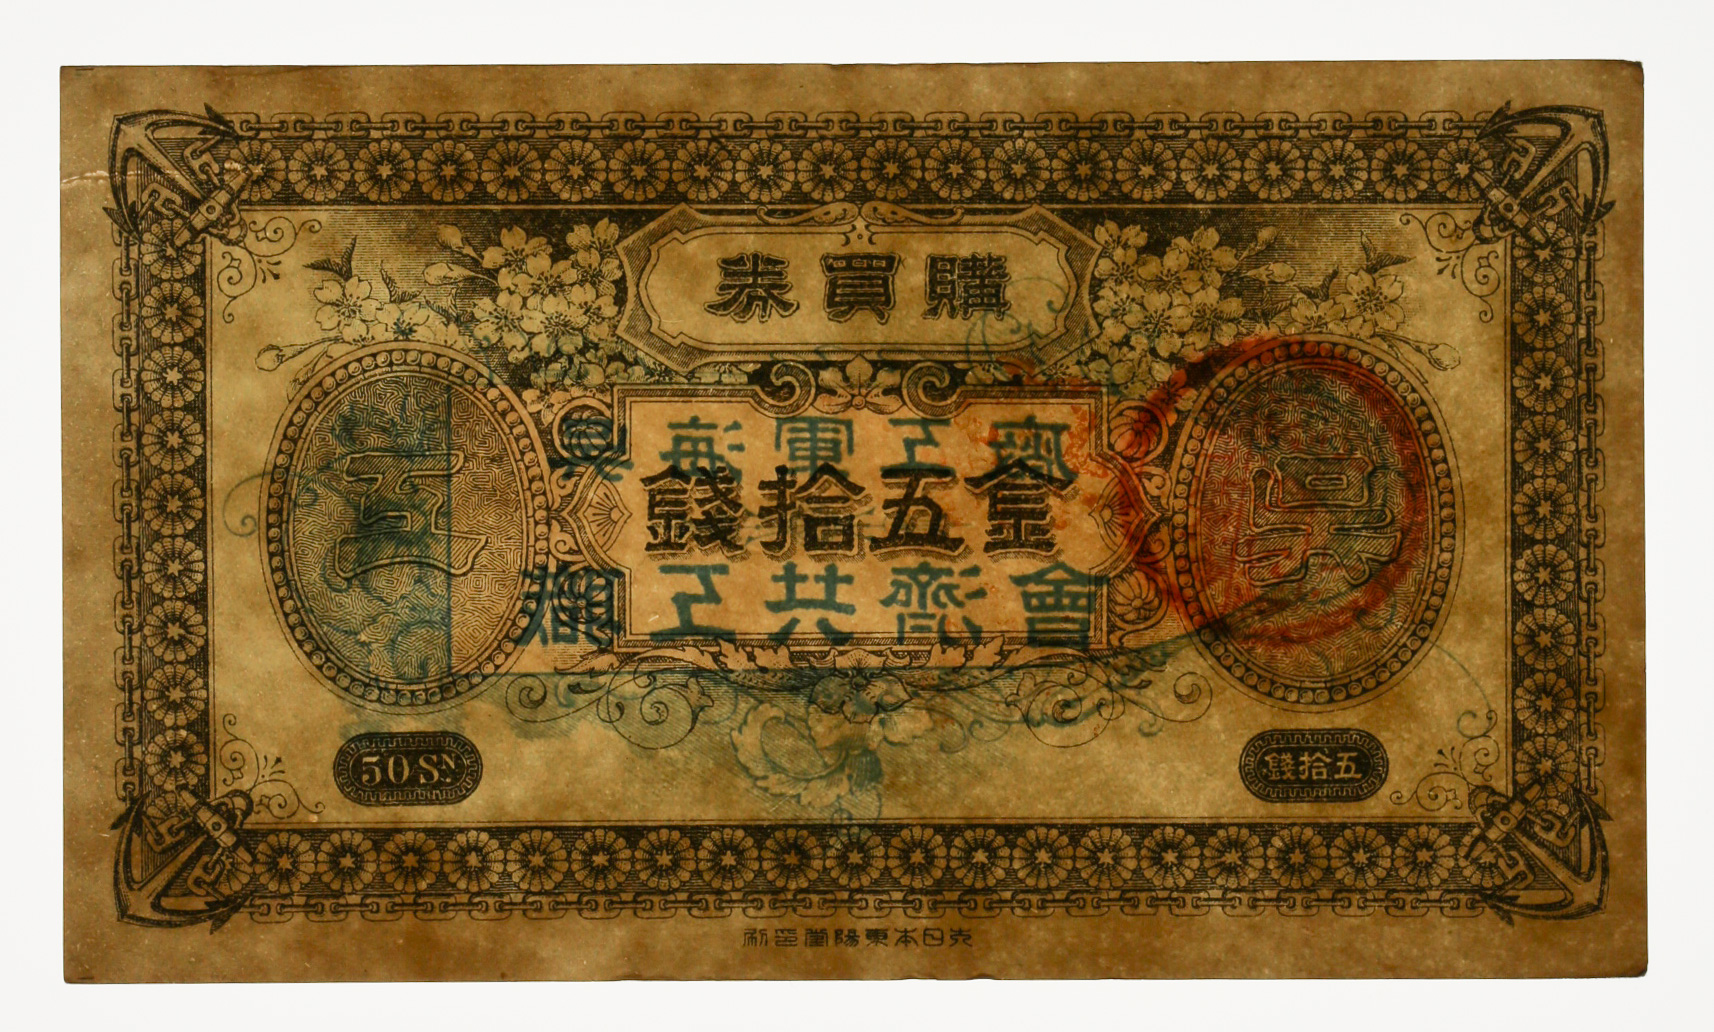 呉海軍 購買券 20銭 - 貨幣